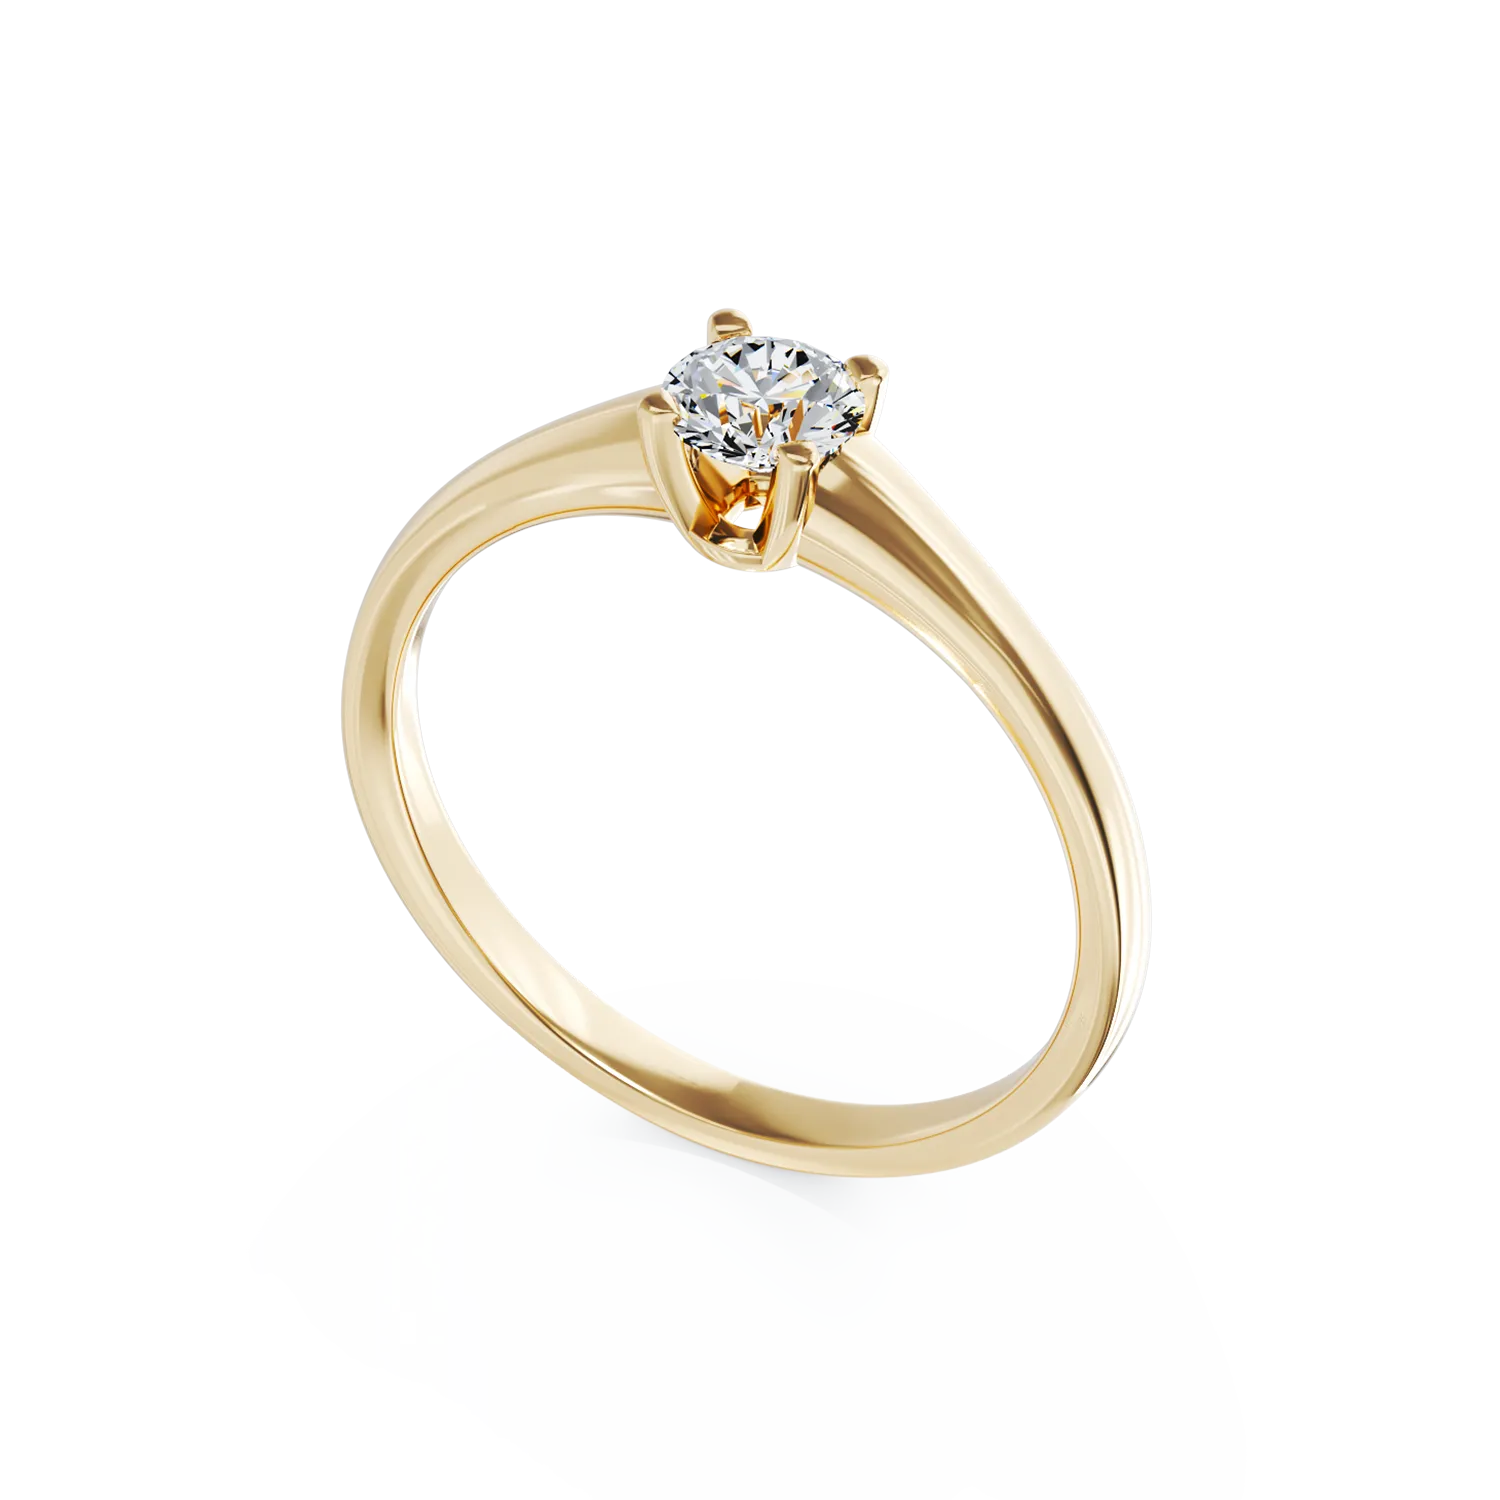 Eljegyzési gyűrű 18K-os sárga aranyból 0,3ct gyémánttal. Gramm: 2,93